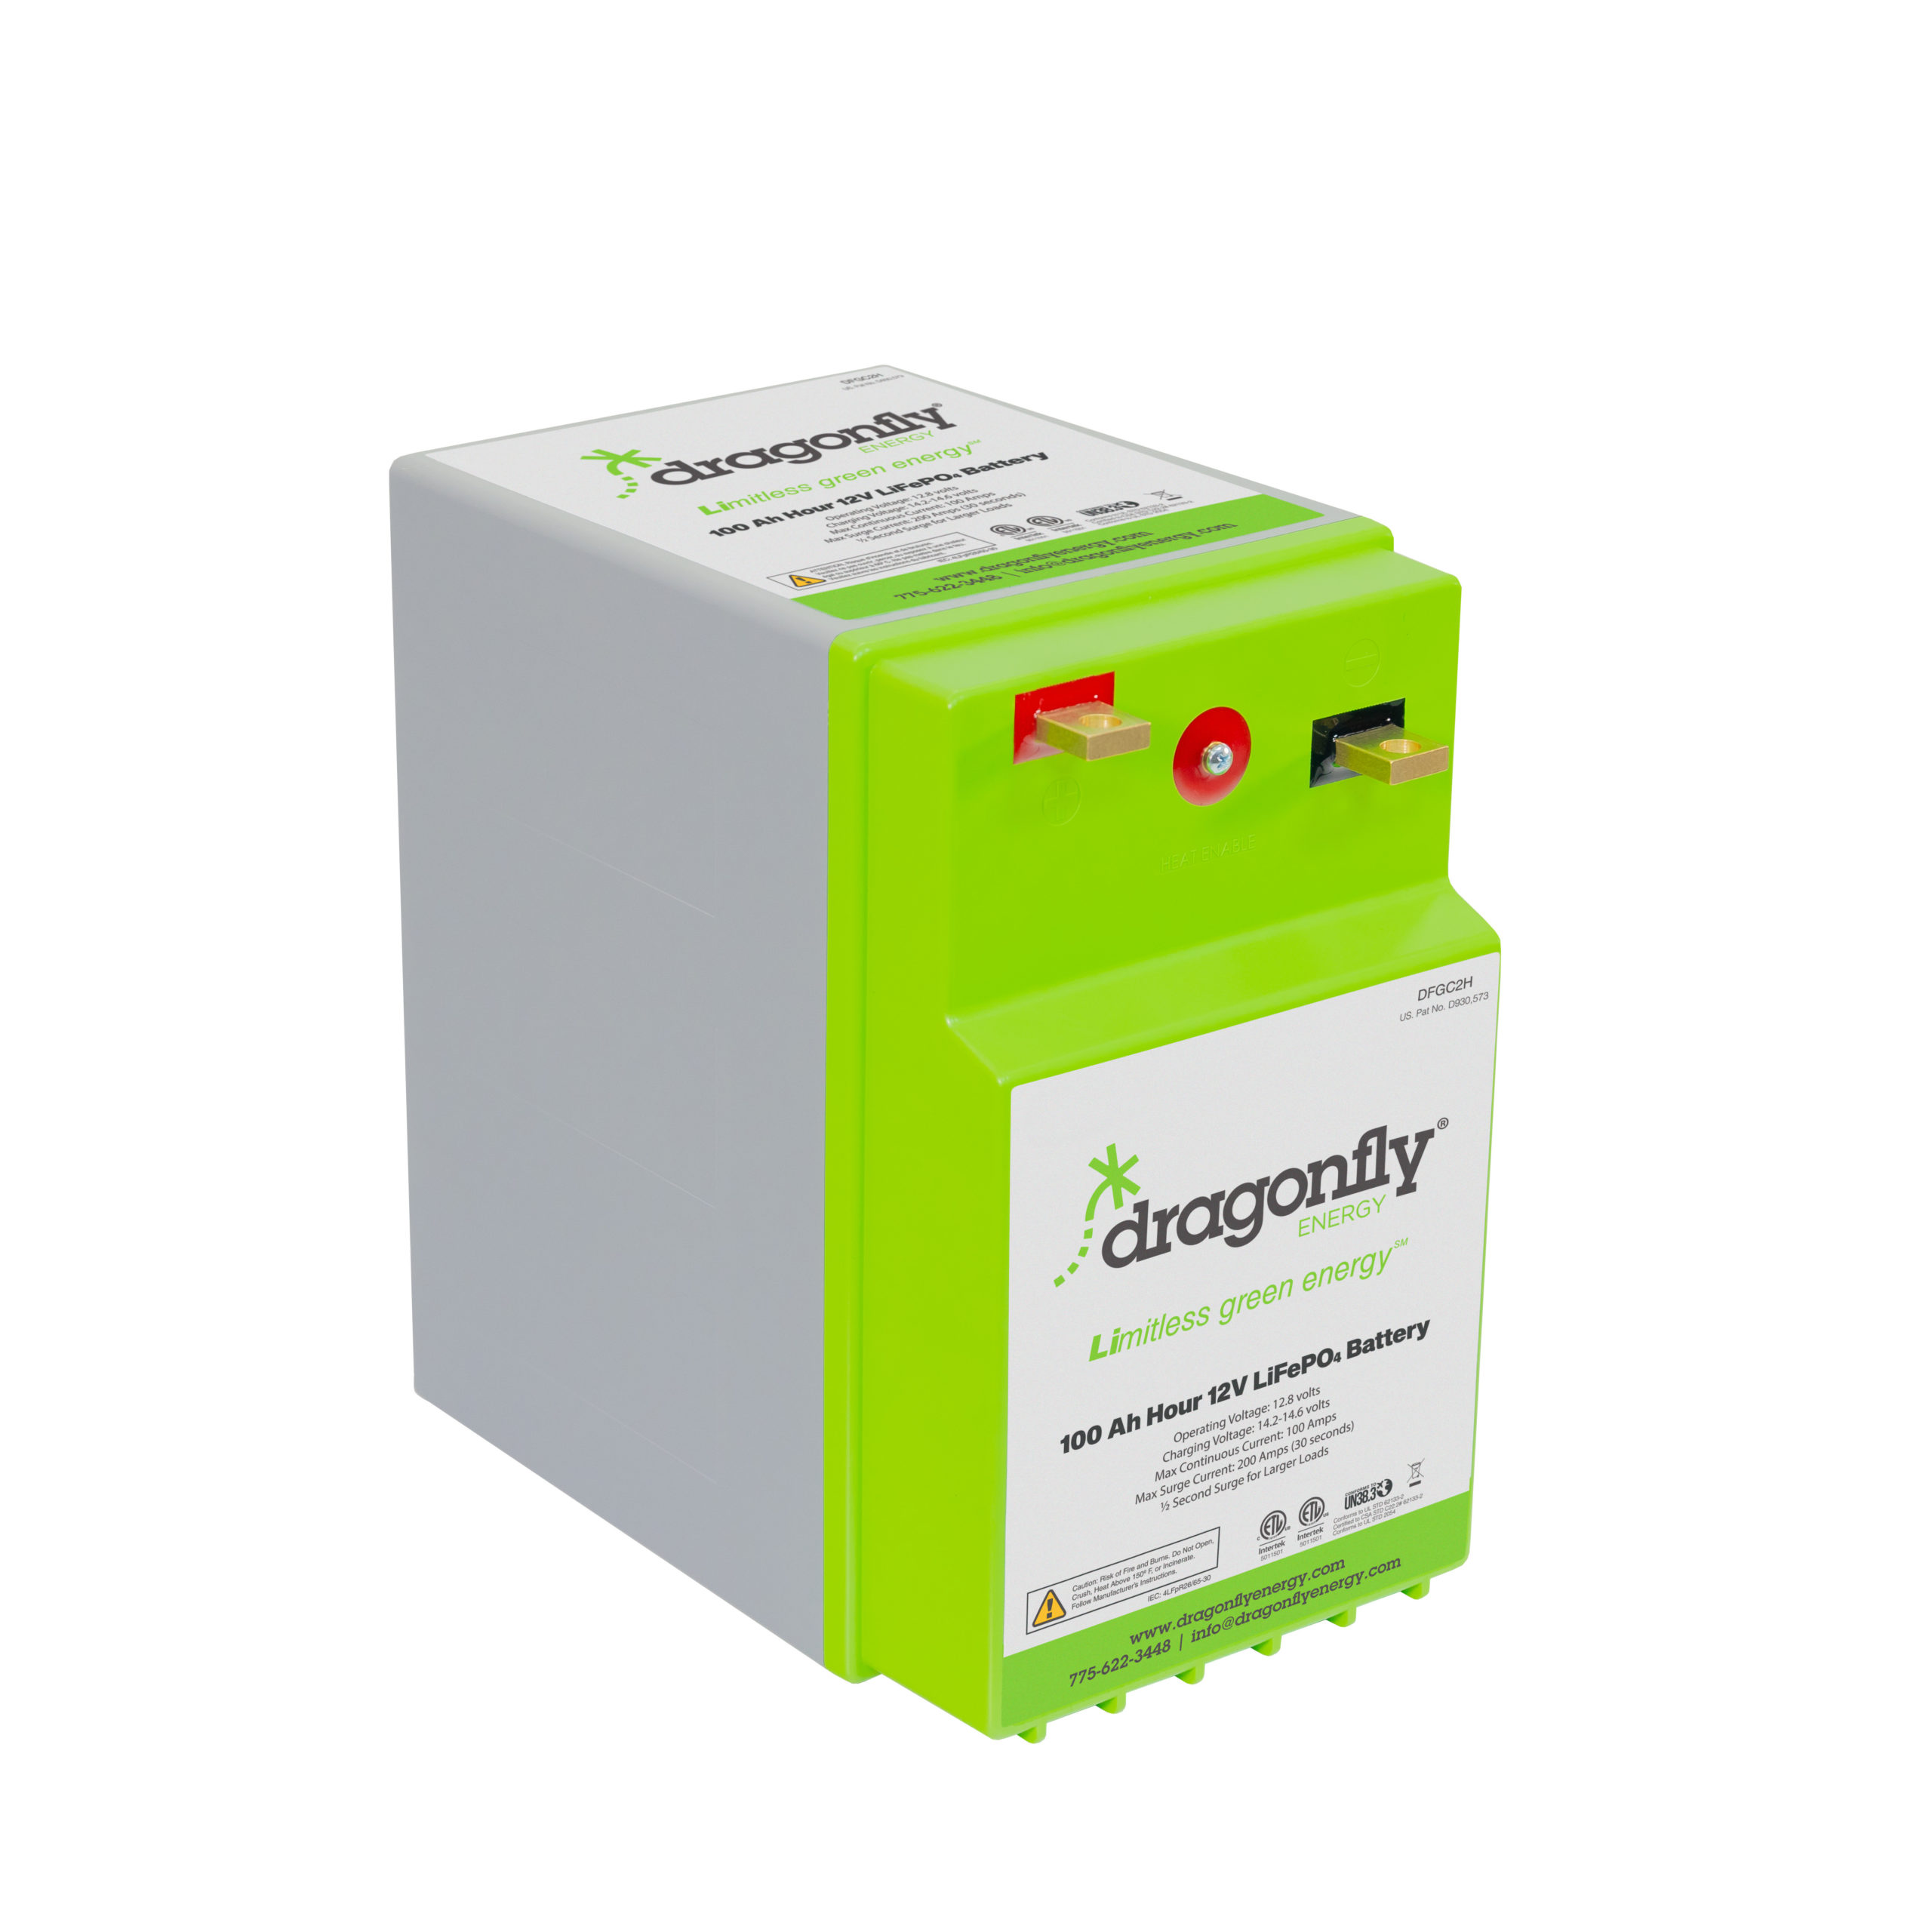 LiFePO4 Batteries - 12V